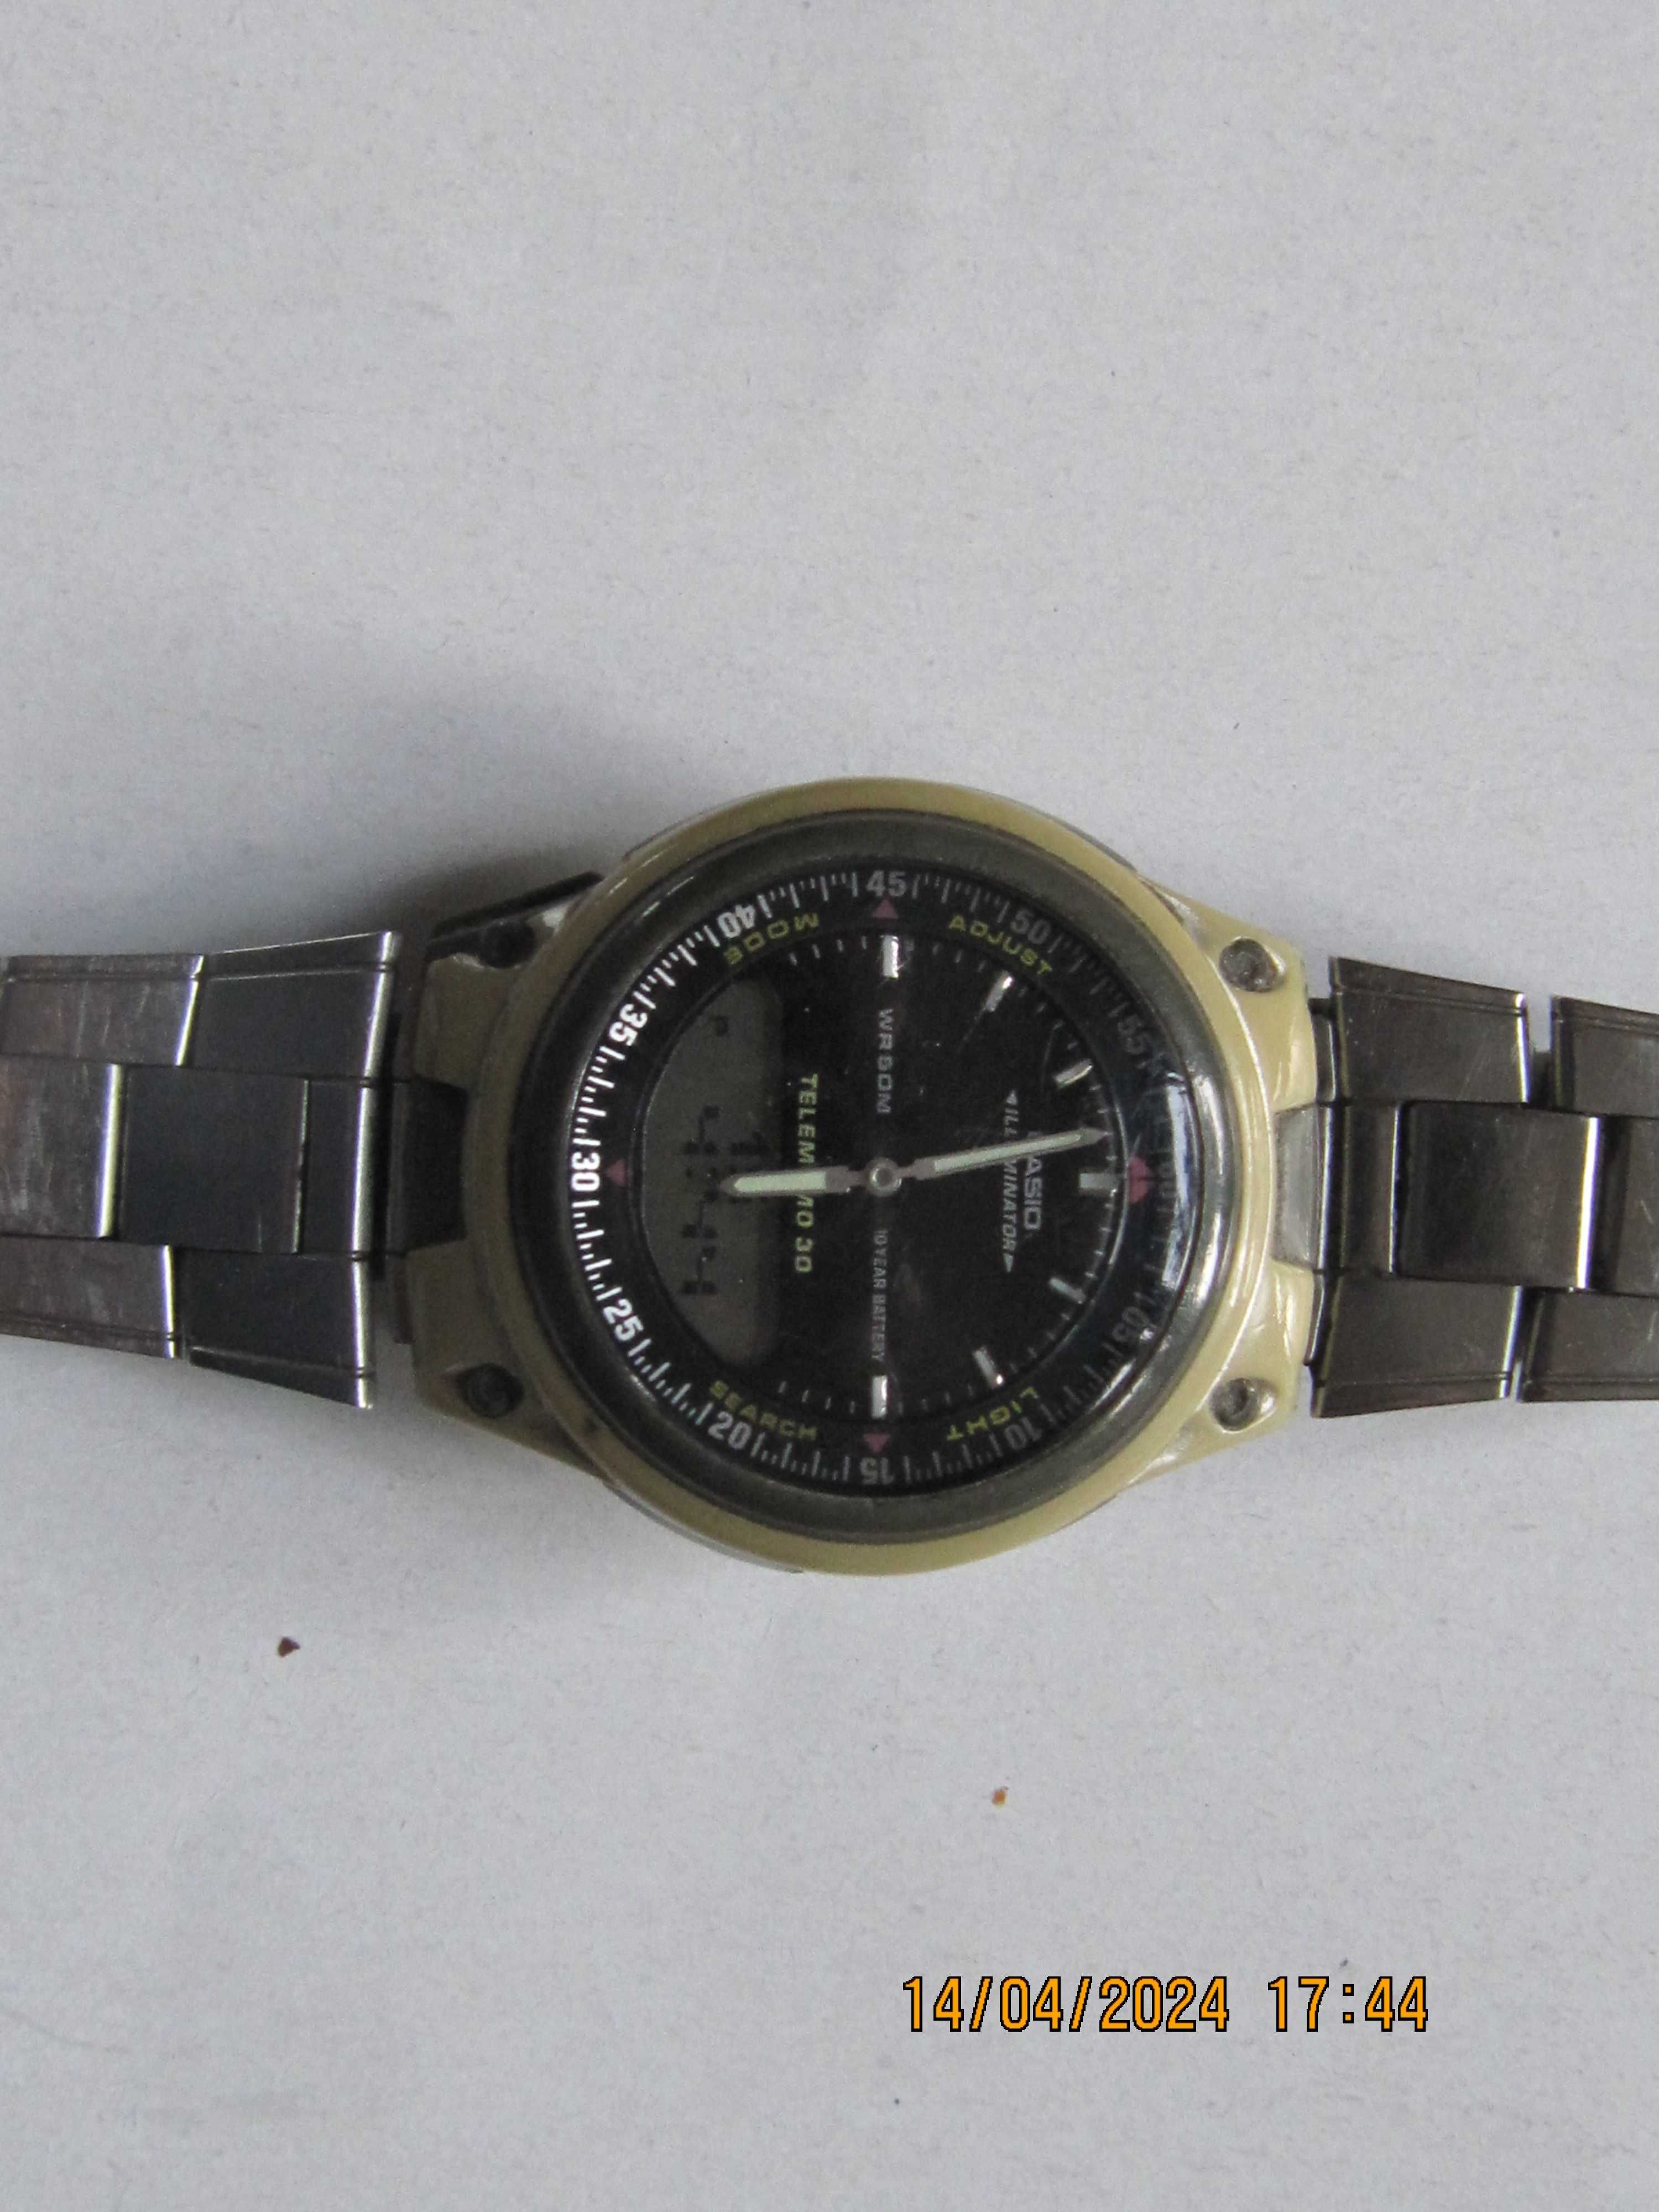 Casio Aw-80 oryginalny sportowy zegarek